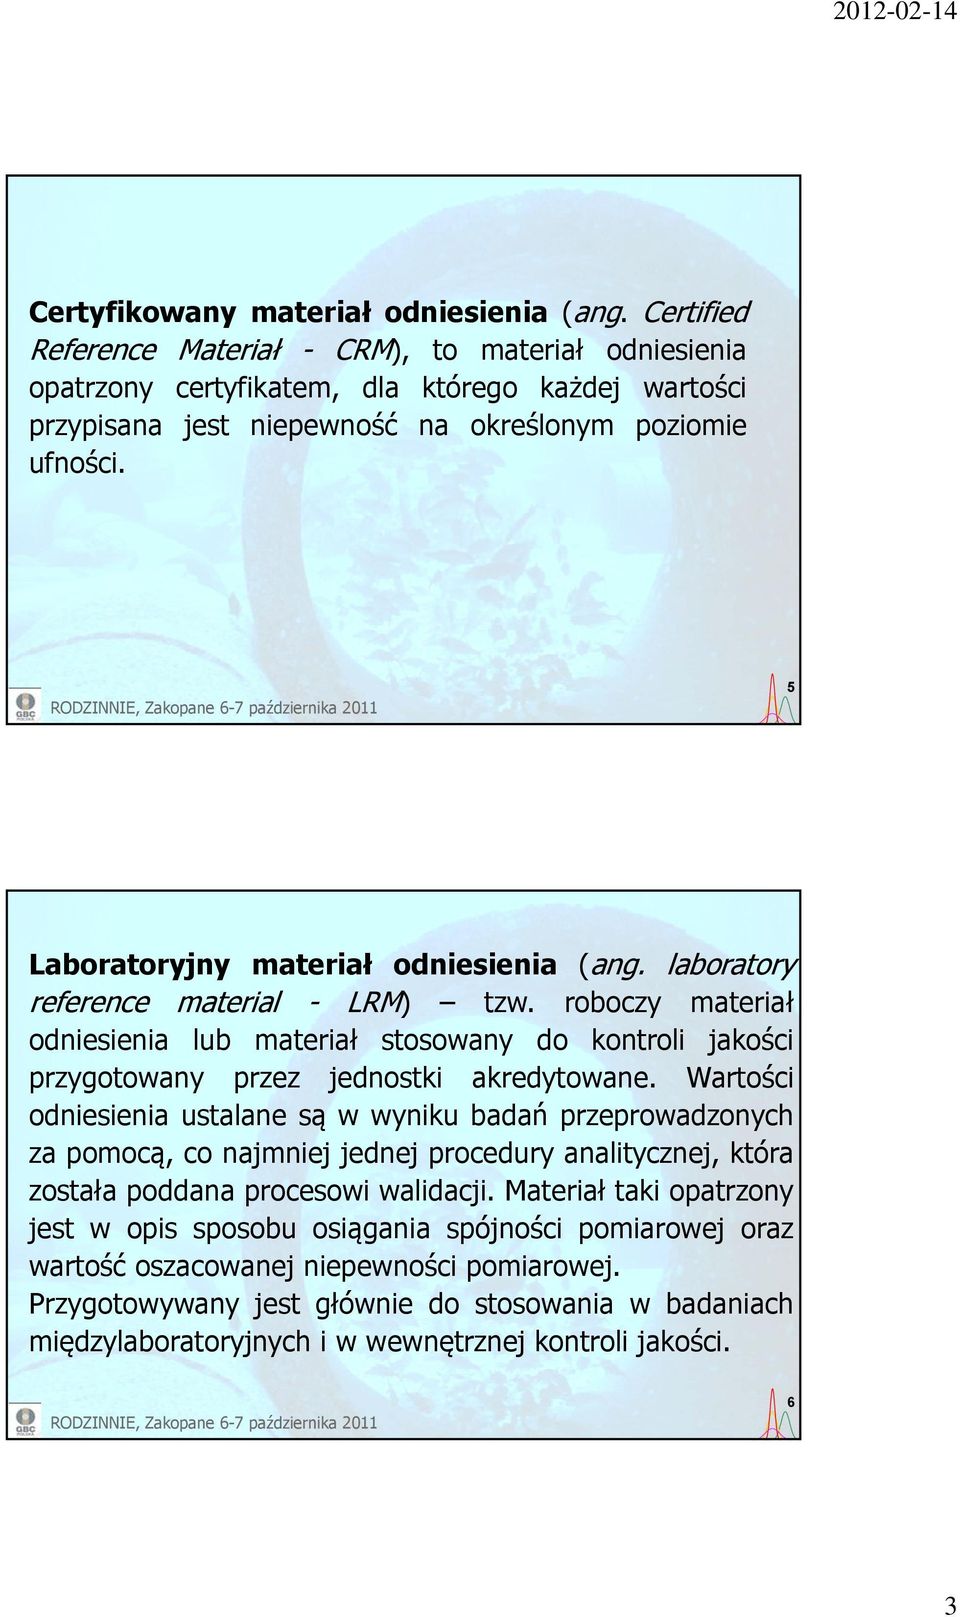 5 Laboratoryjny materiał odniesienia (ang. laboratory reference material - LRM) tzw. roboczy materiał odniesienia lub materiał stosowany do kontroli jakości przygotowany przez jednostki akredytowane.